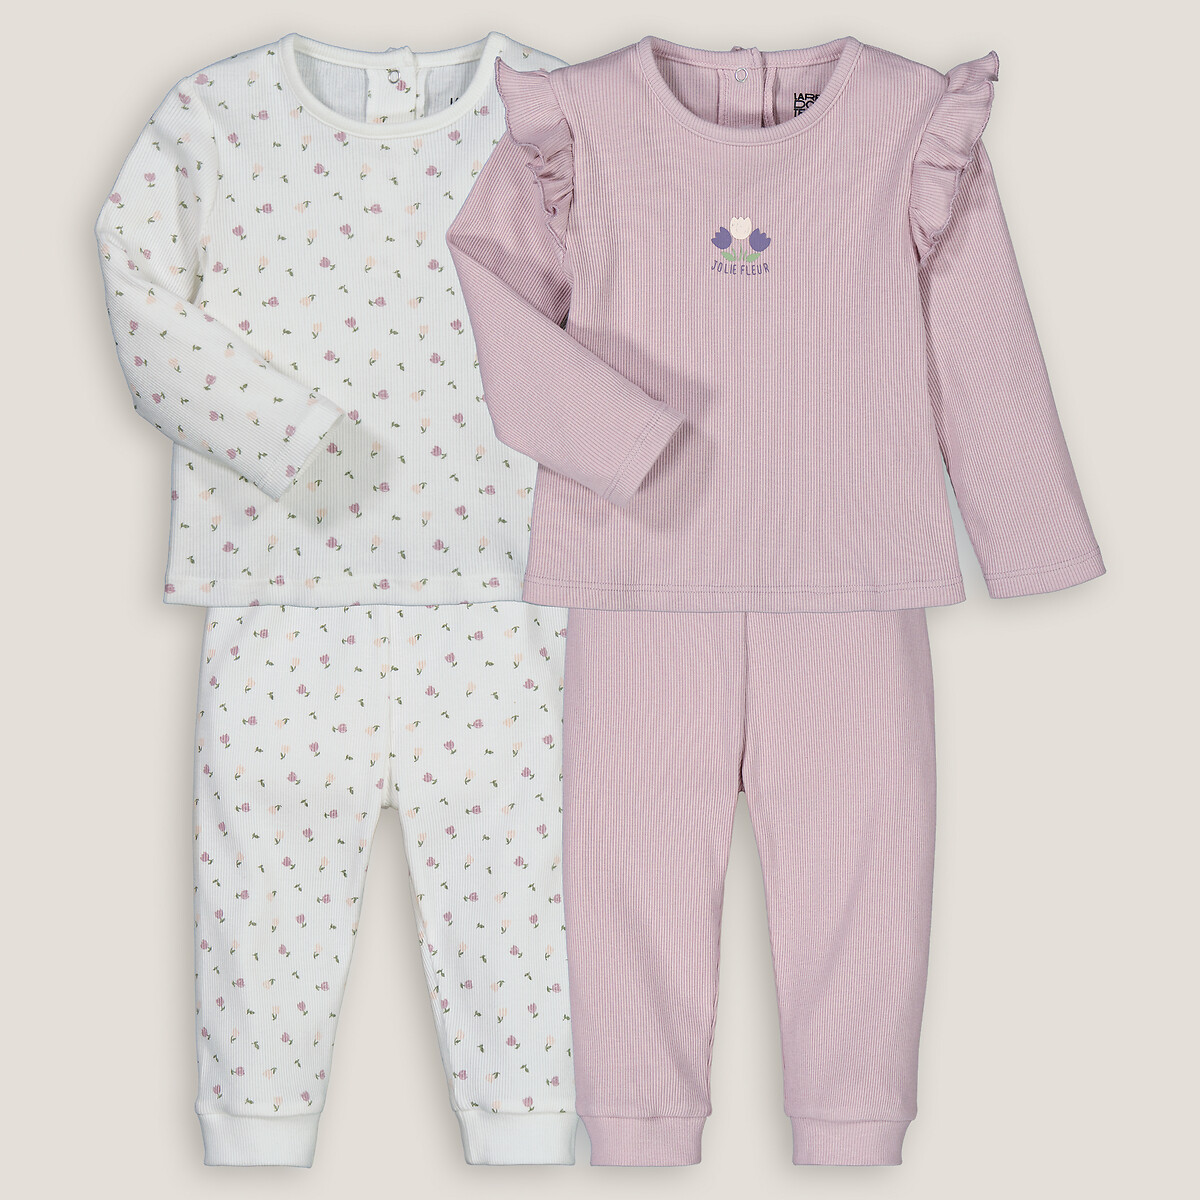 Комплект из двух пижам раздельных в рубчик 3 года - 94 см другие комплект из двух пижам с шортами в рубчик 3 года 94 см розовый